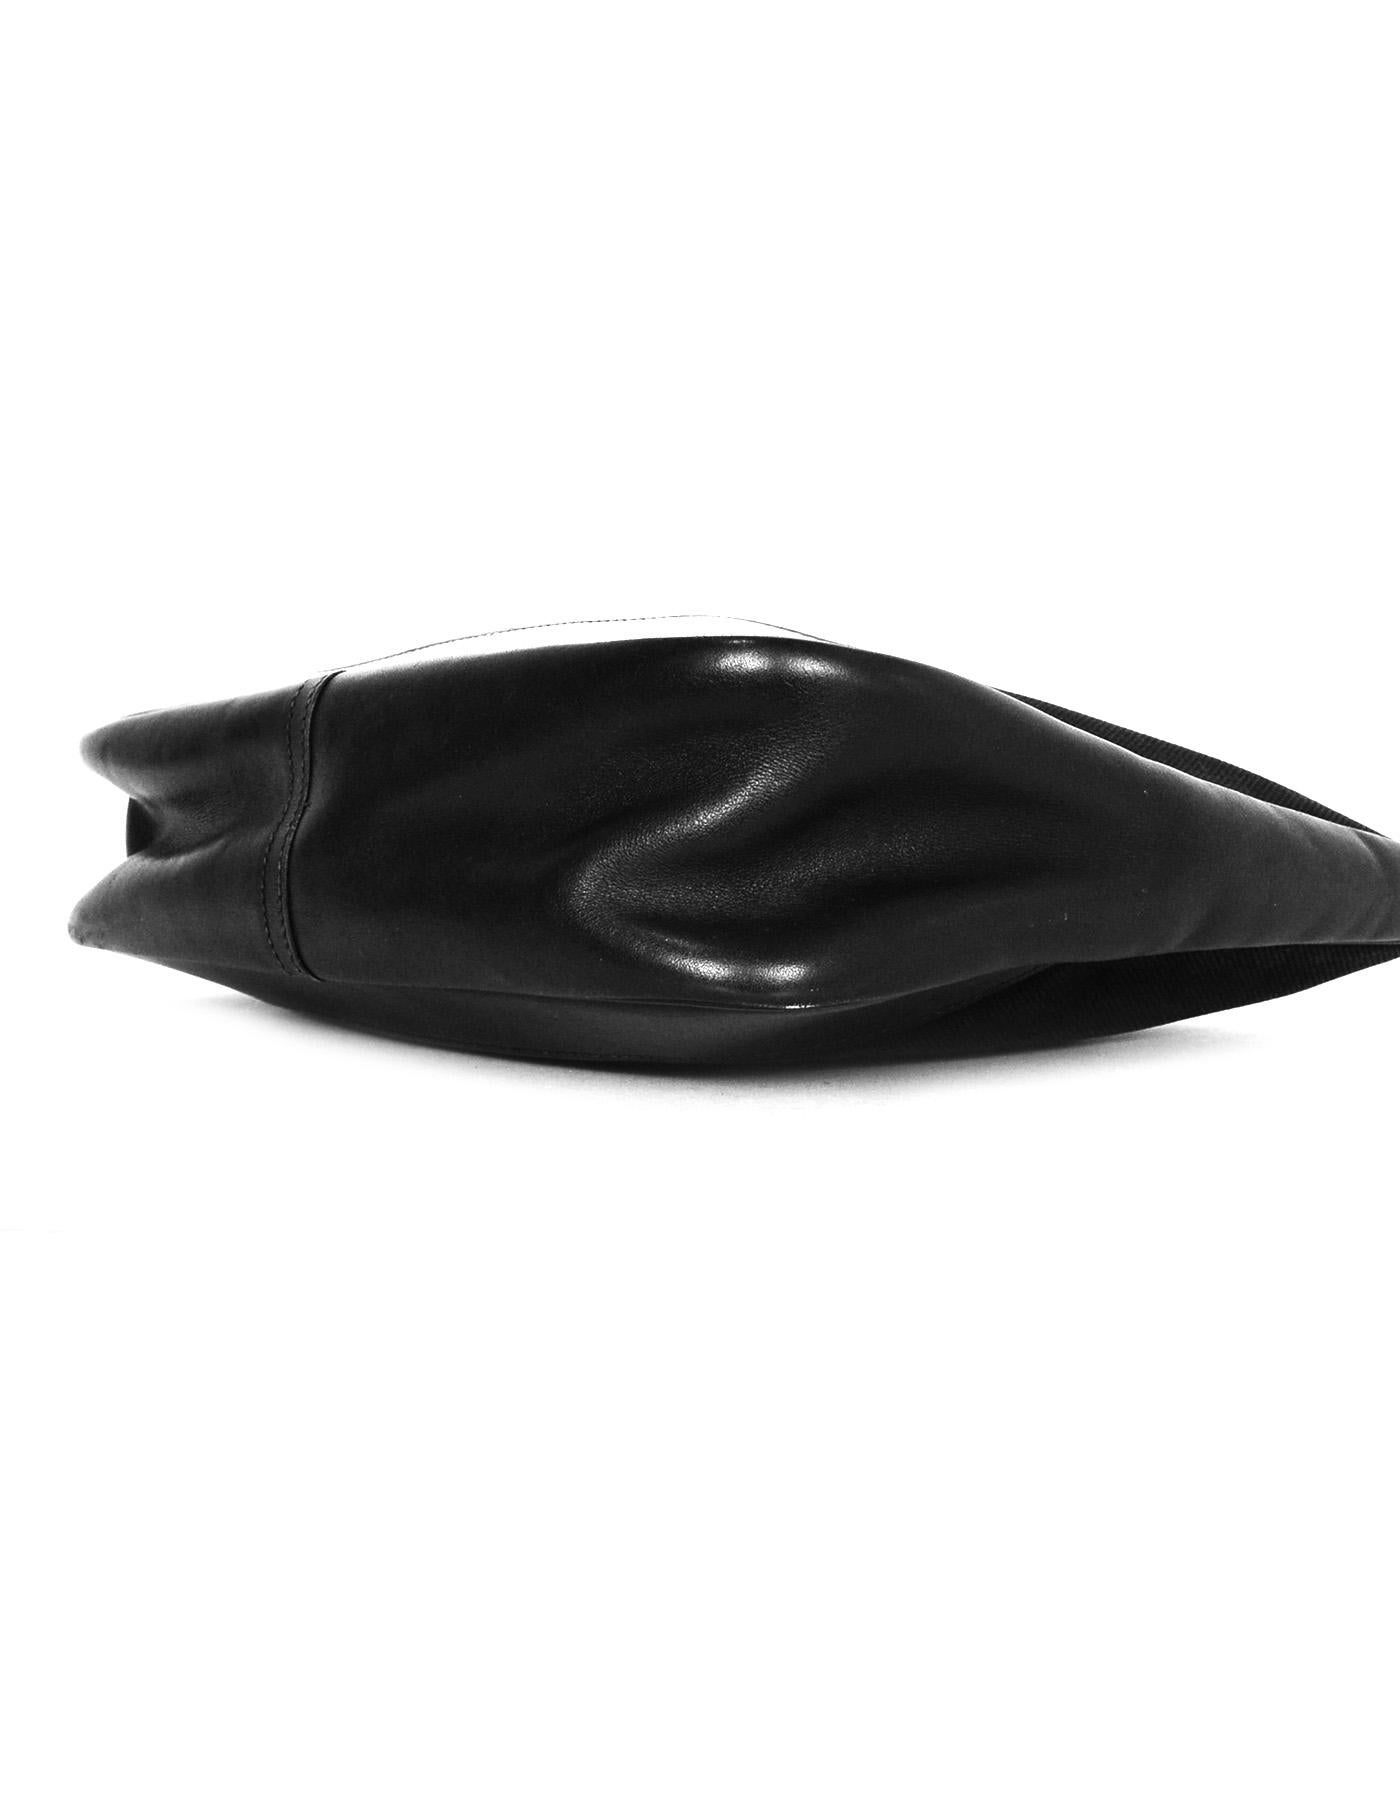 Hermes Black Canvas & Leather Toile 31cm Trim Shoulder Bag W/ Goldtone Hardware 1